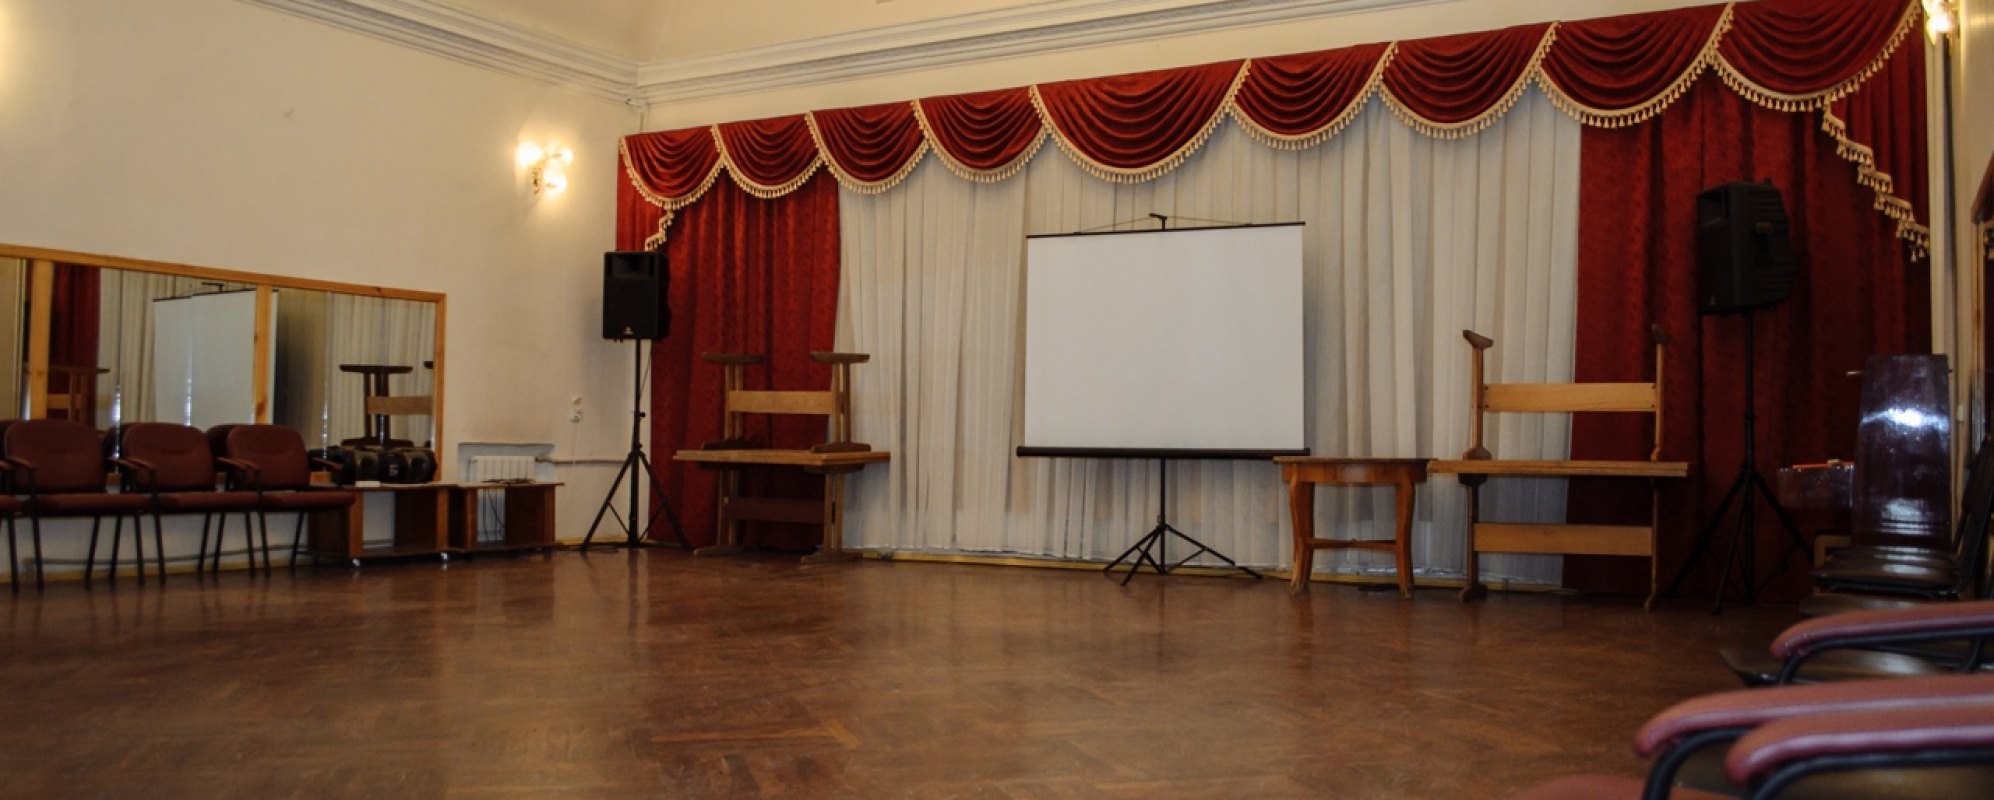 Фотографии концертного зала Стеклозаводский дом культуры Малый зал